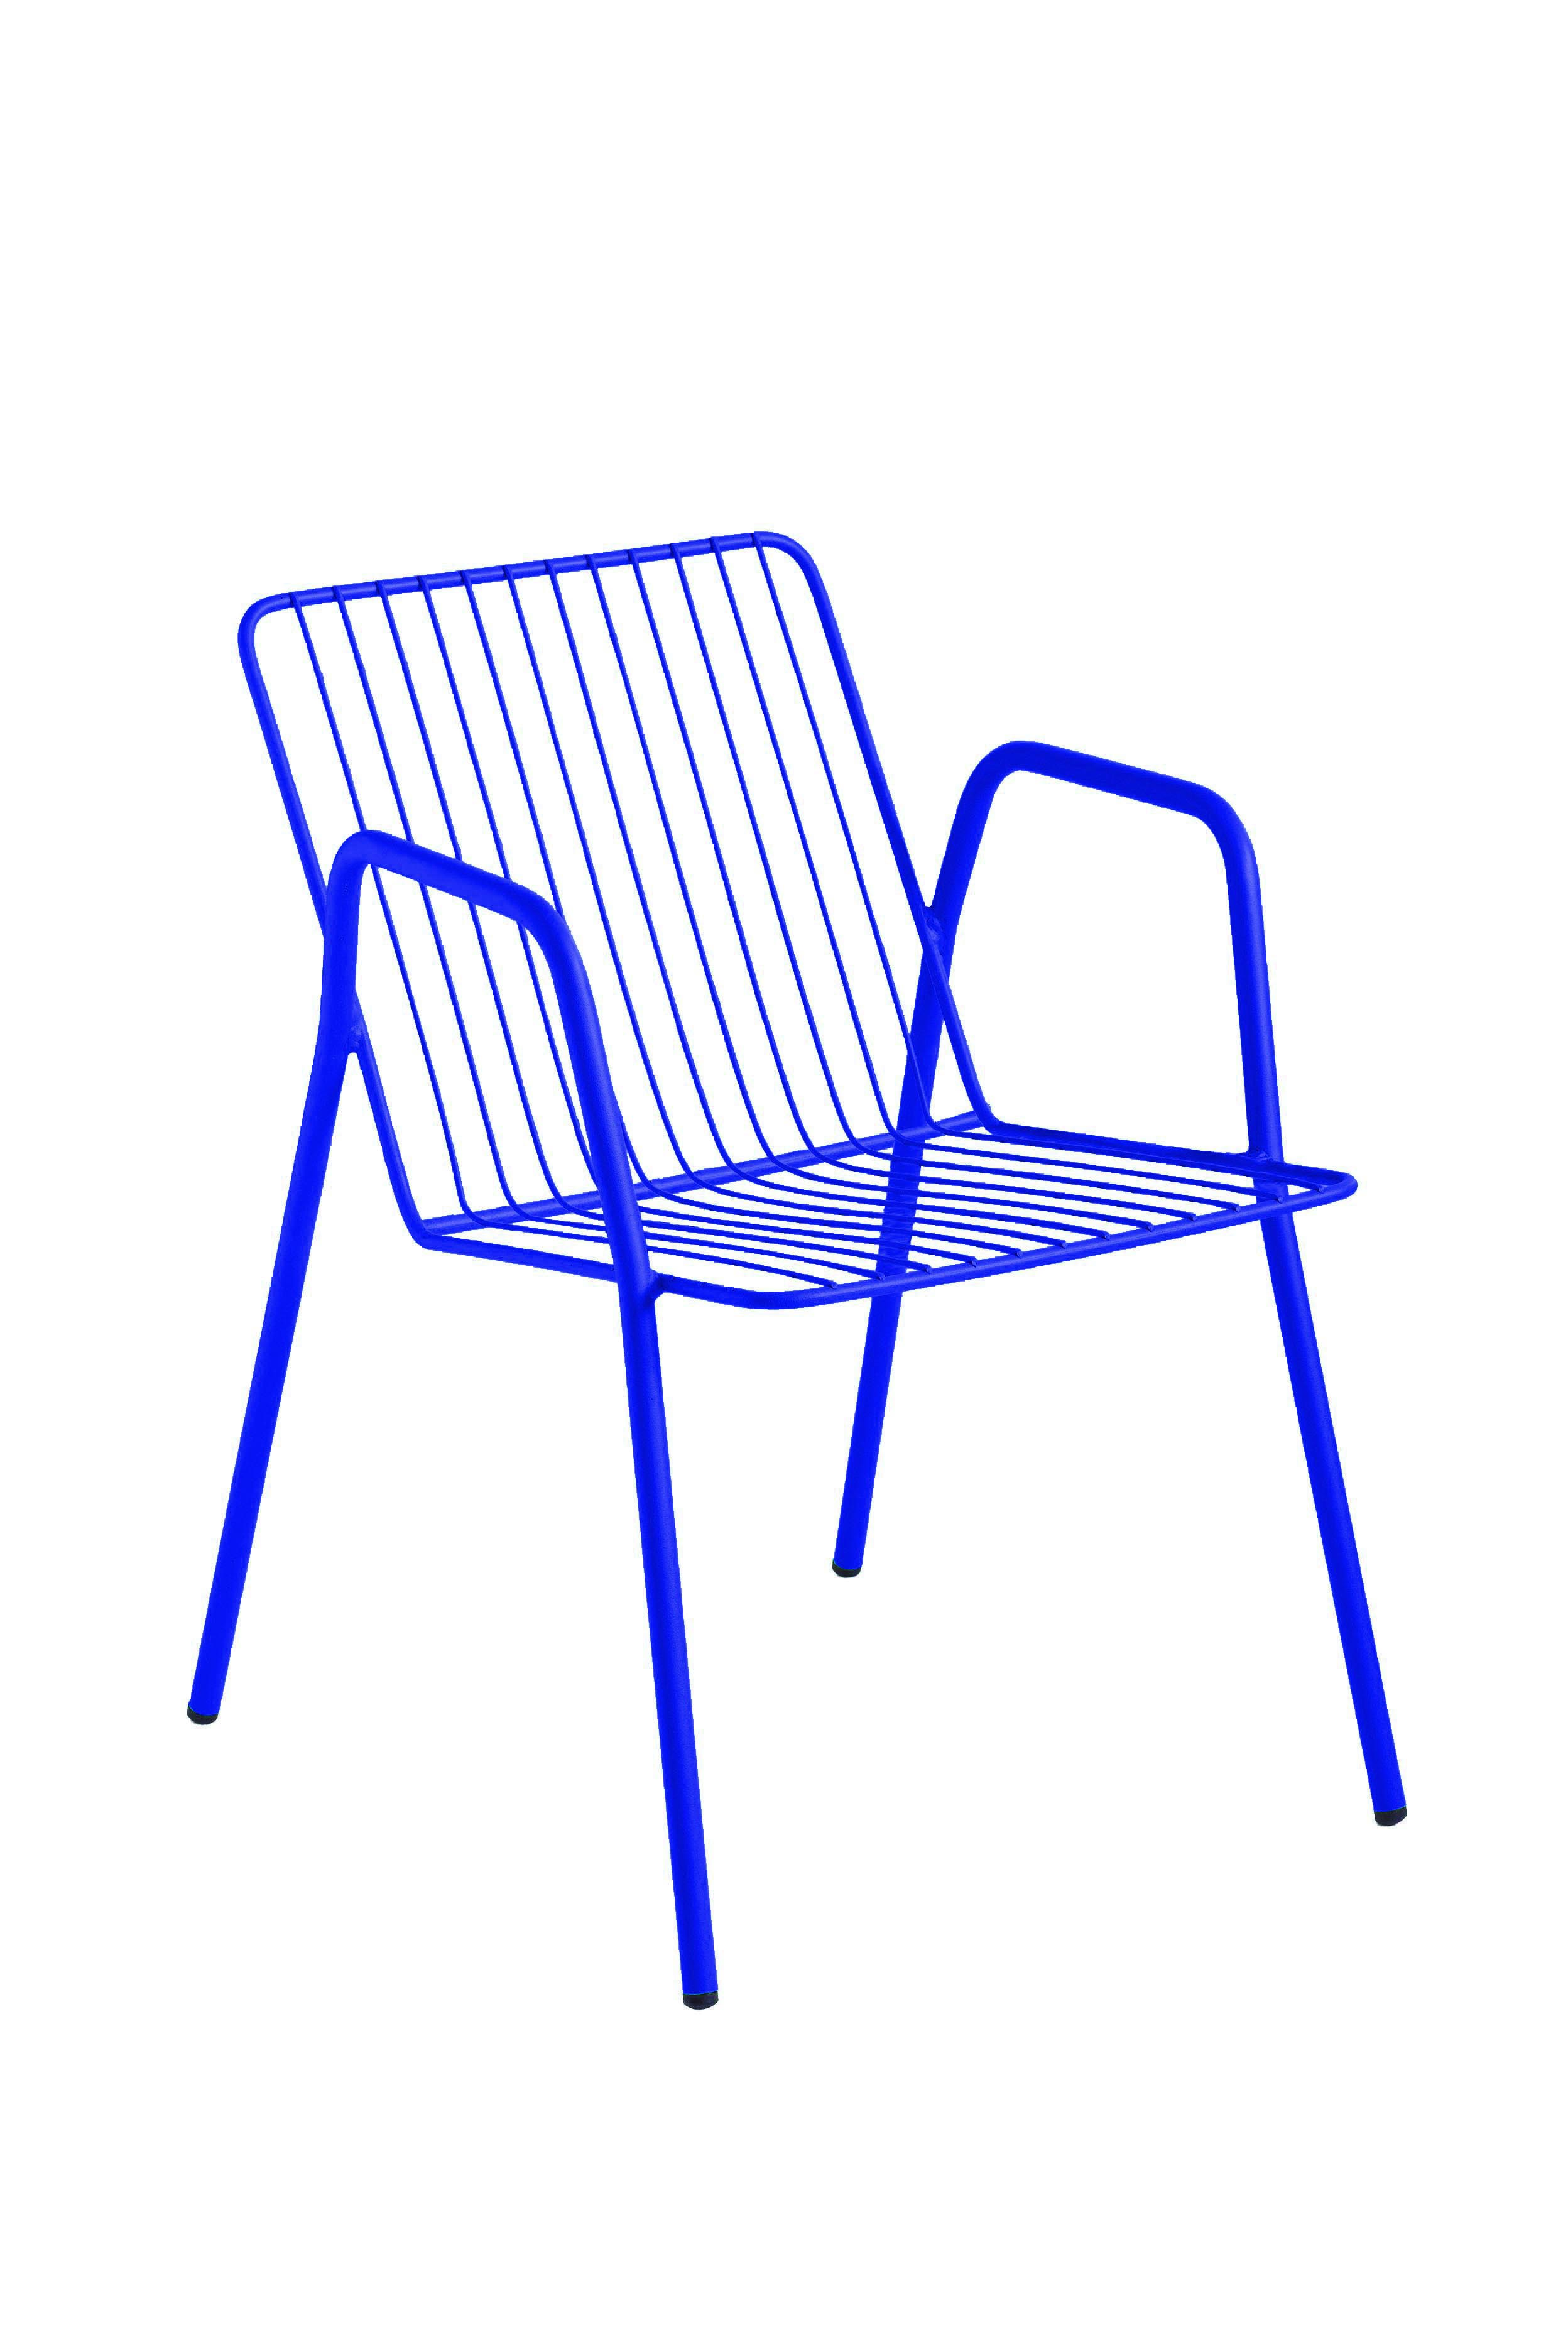 Chaise en acier bleu